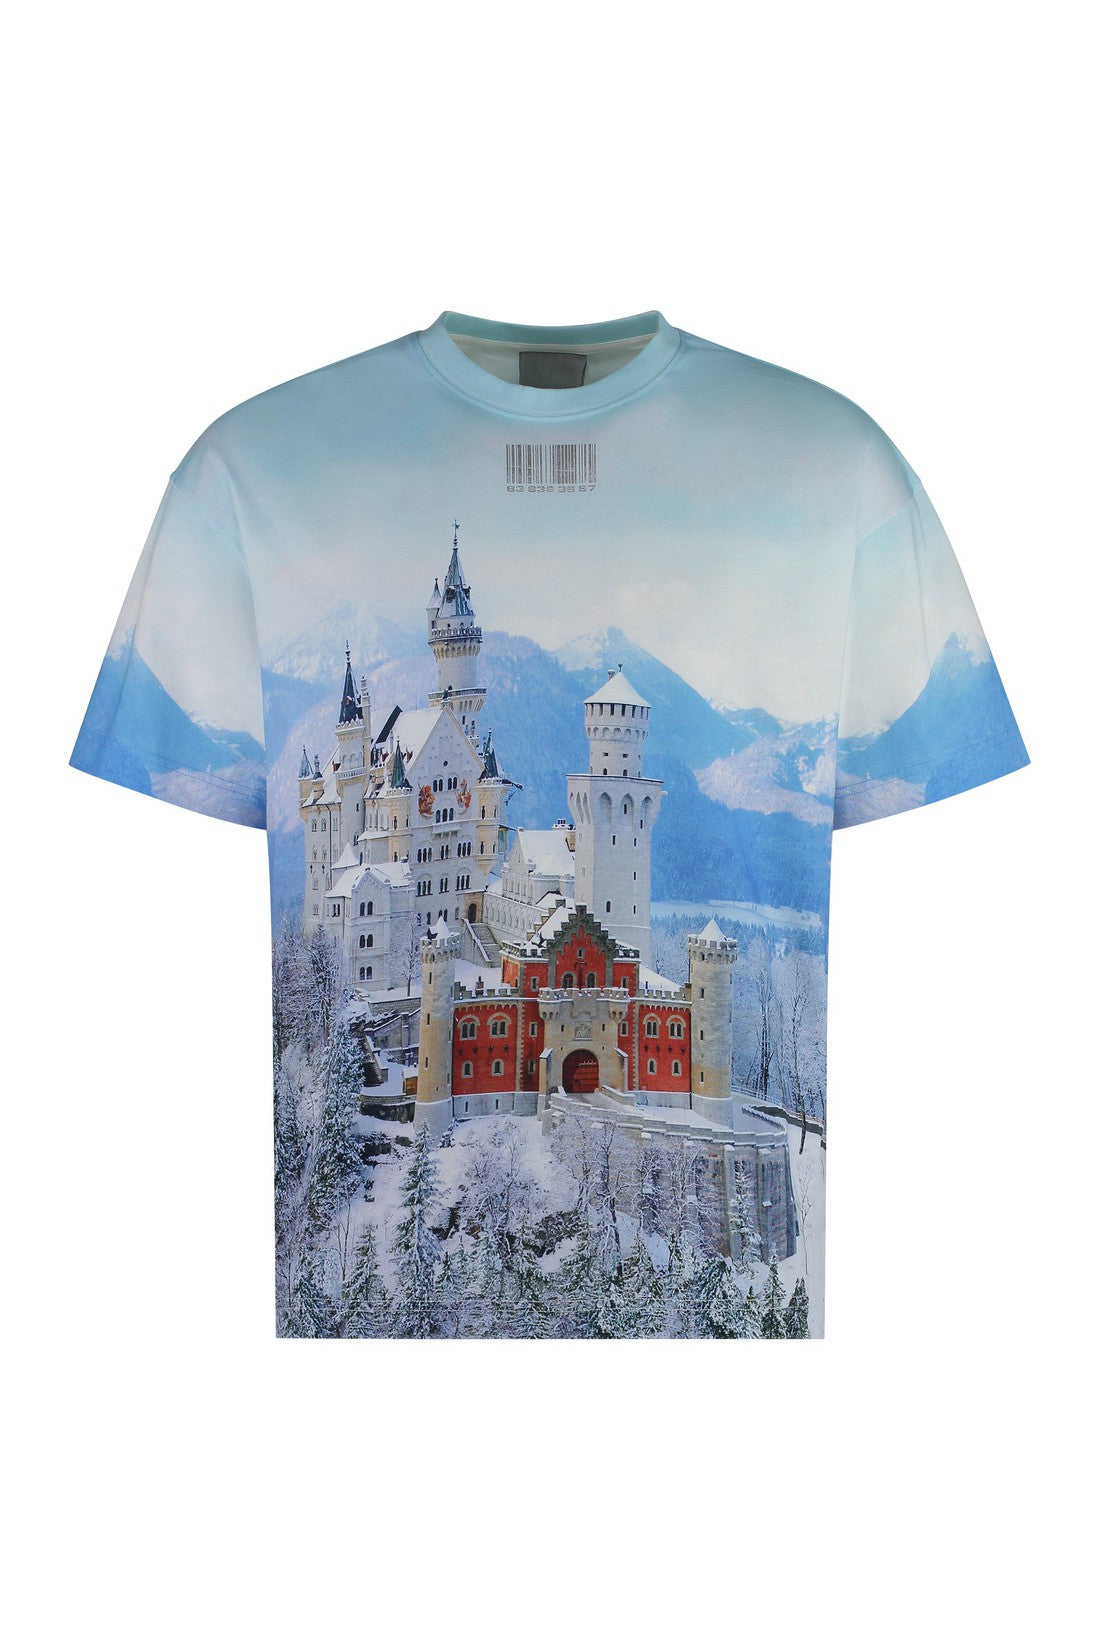 Neuschwanstein Winter printed cotton t-shirt